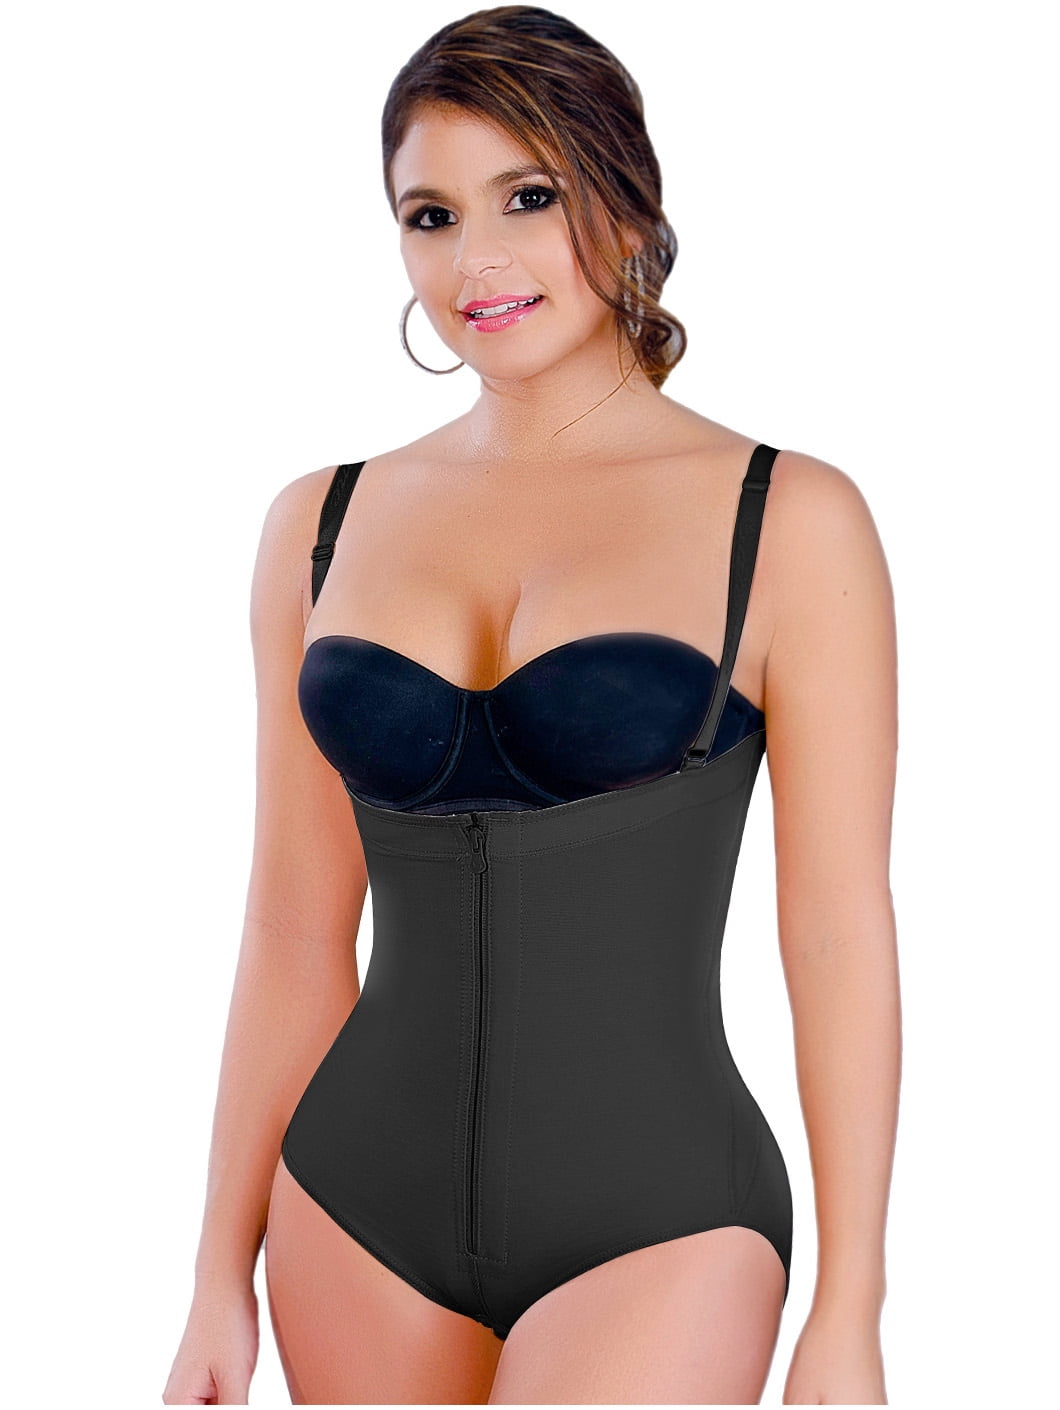 Salome 0215 Women Strapless Bodysuit Shaper Fajas Reductoras y Moldeadoras Beige